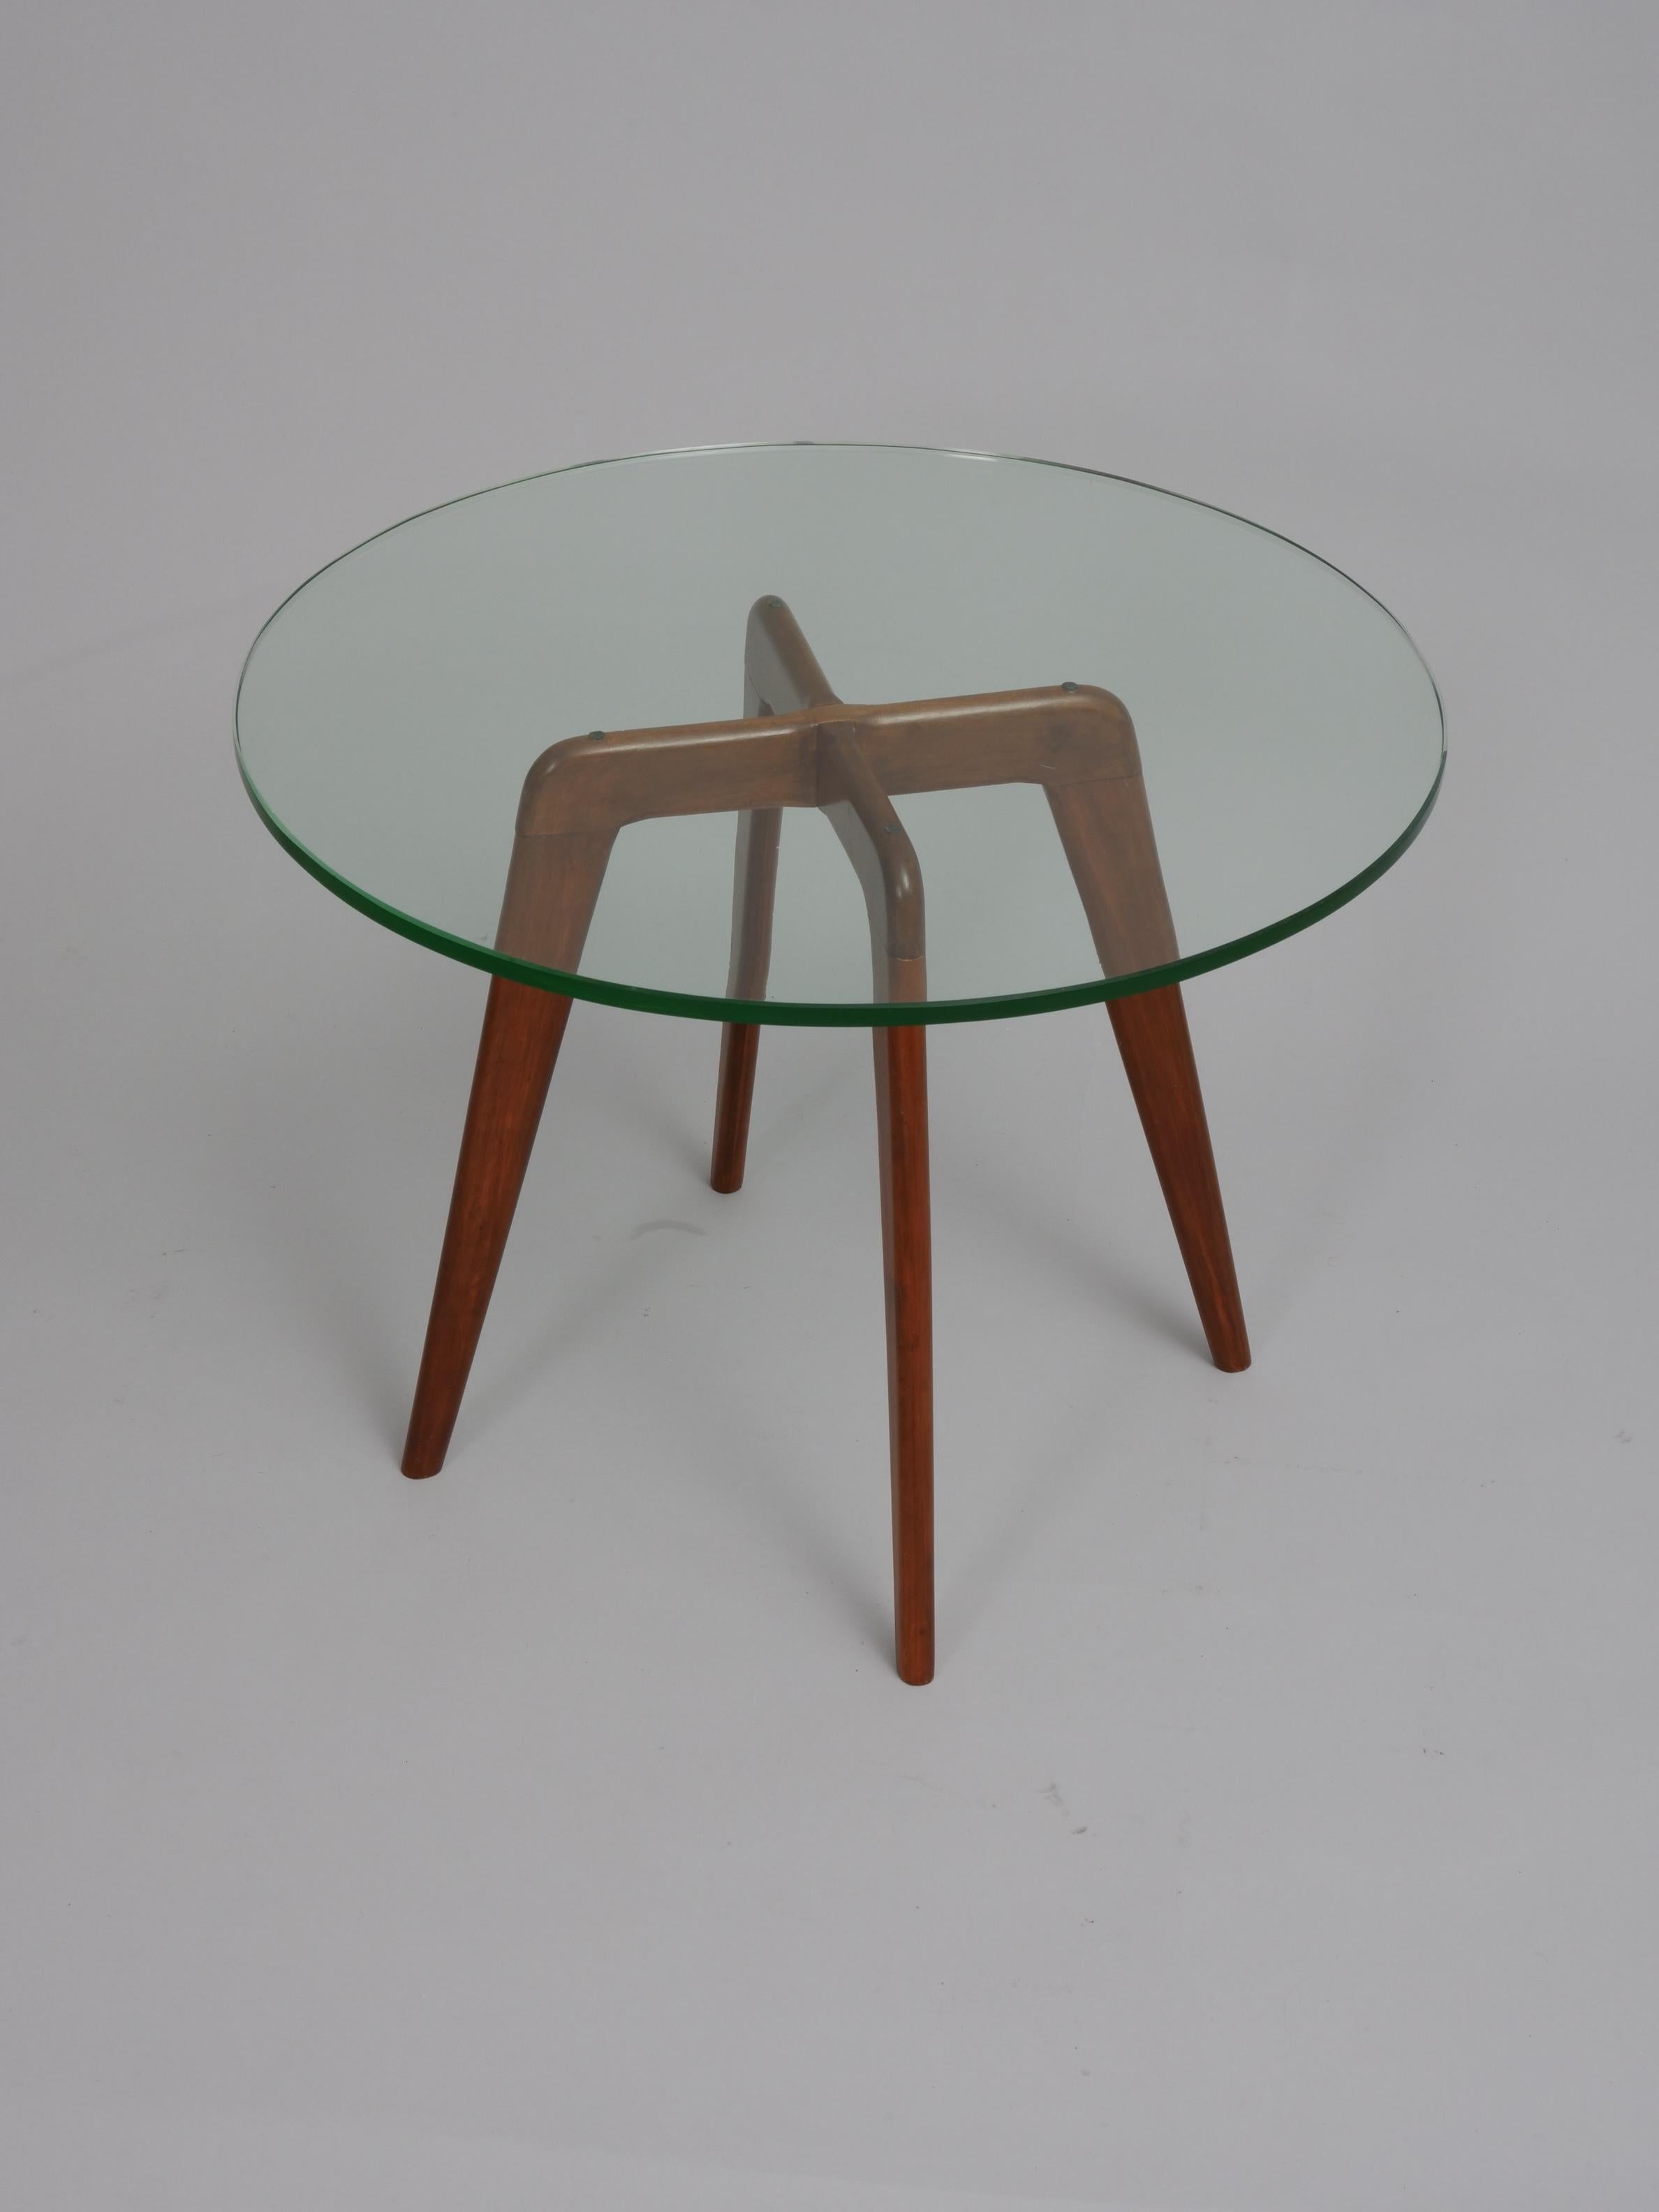 Schöner kleiner runder Tisch aus Holz und Glas im Stil von Gio Ponti. 

Italien um 1950. 